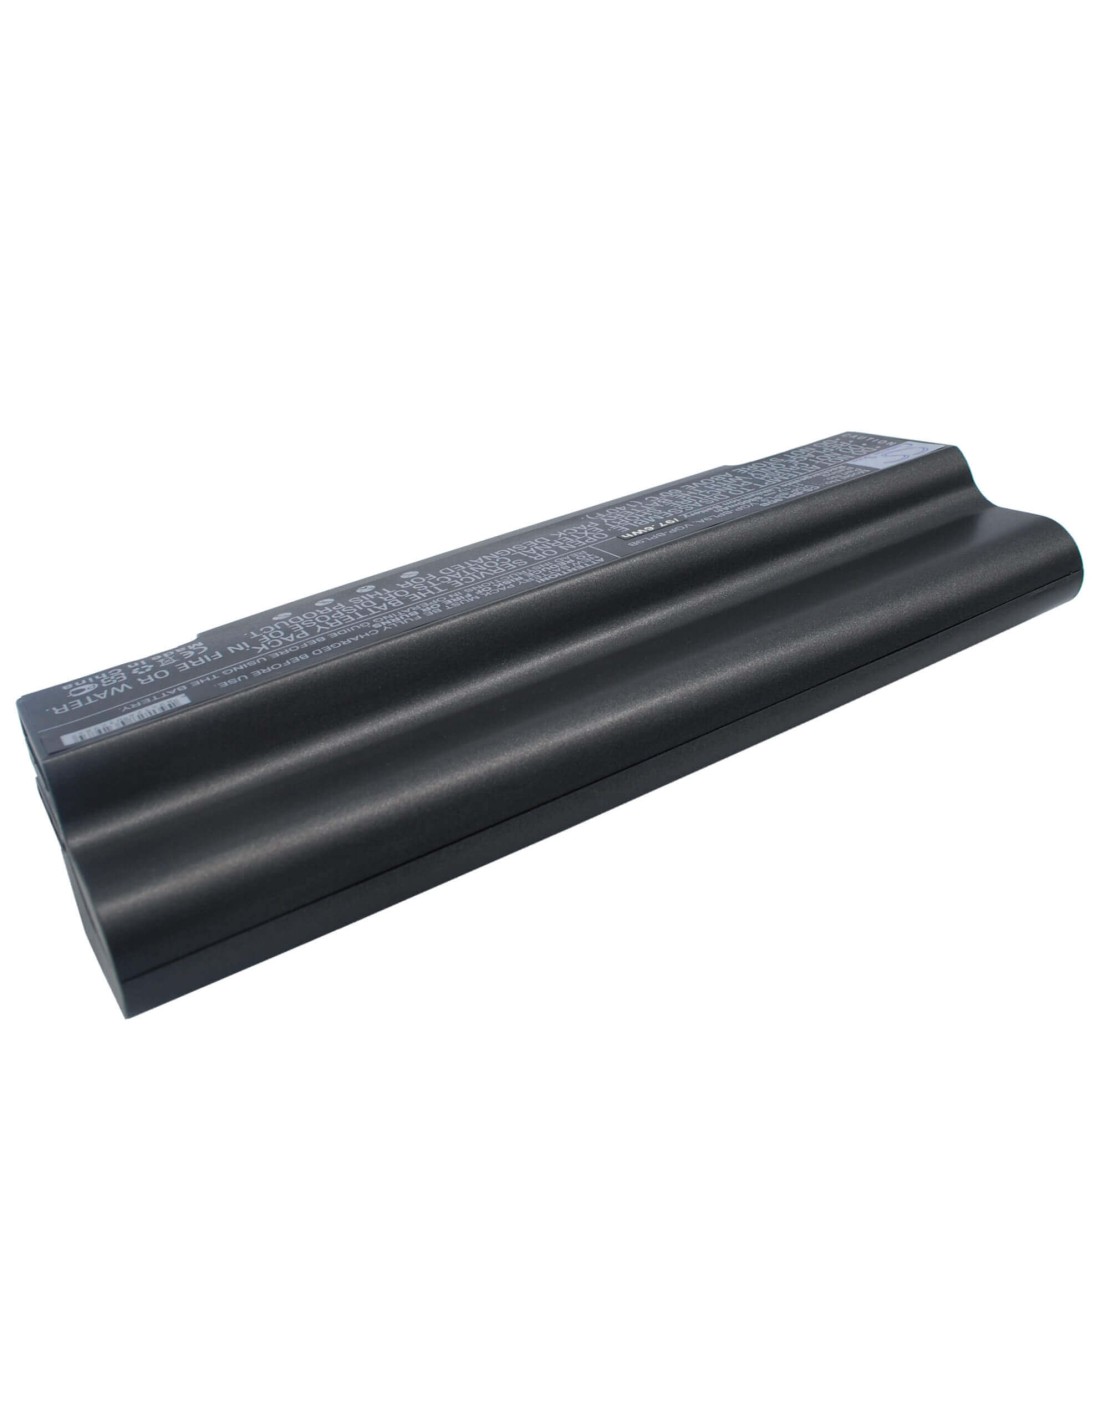 Black Battery for Sony Vaio Vgn-ar41e, Vaio Vgn-ar41l, Vaio Vgn-ar41m 11.1V, 8800mAh - 97.68Wh